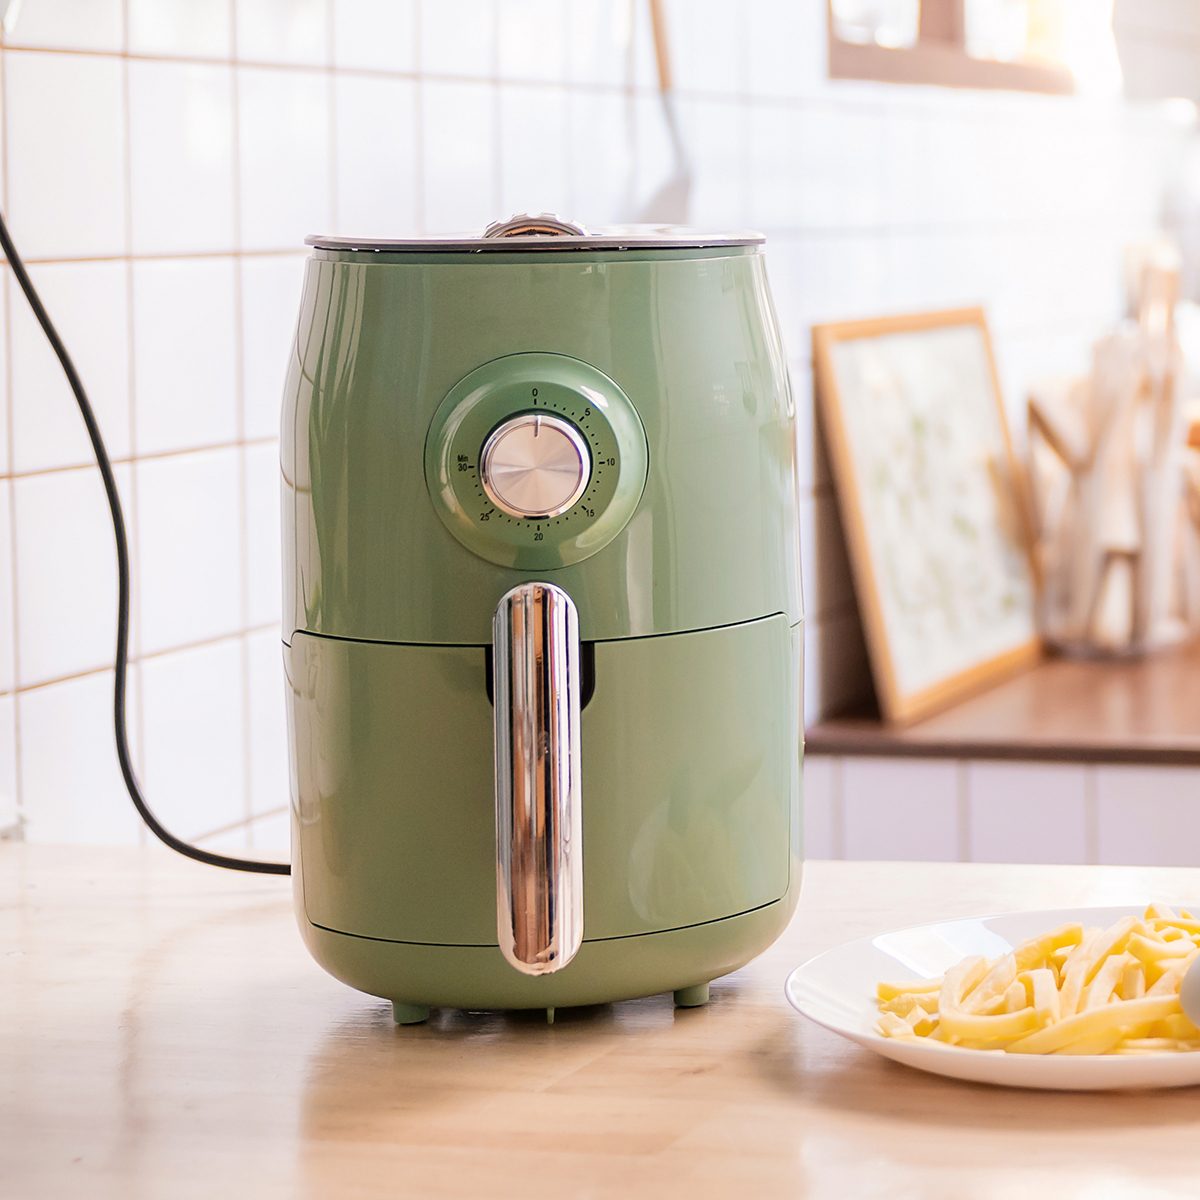 空气炸锅机烹饪土豆在厨房的家庭。新常态的家庭烹饪生活方式。科技环保家居智能设备。空气炸锅机与法式油炸概念